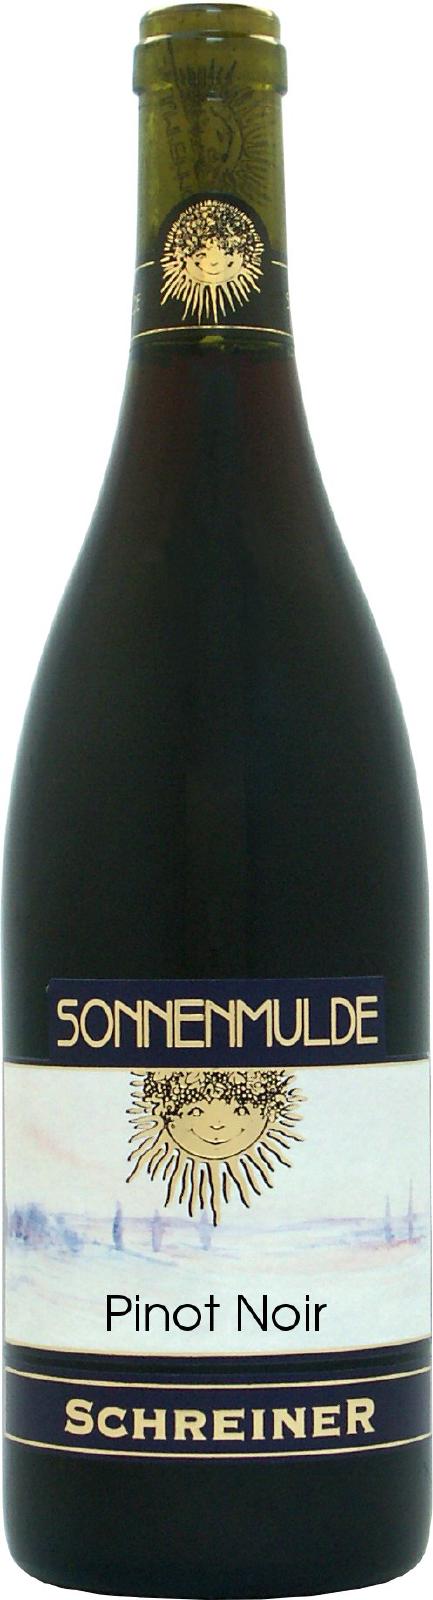 A bottle of Pinot Noir